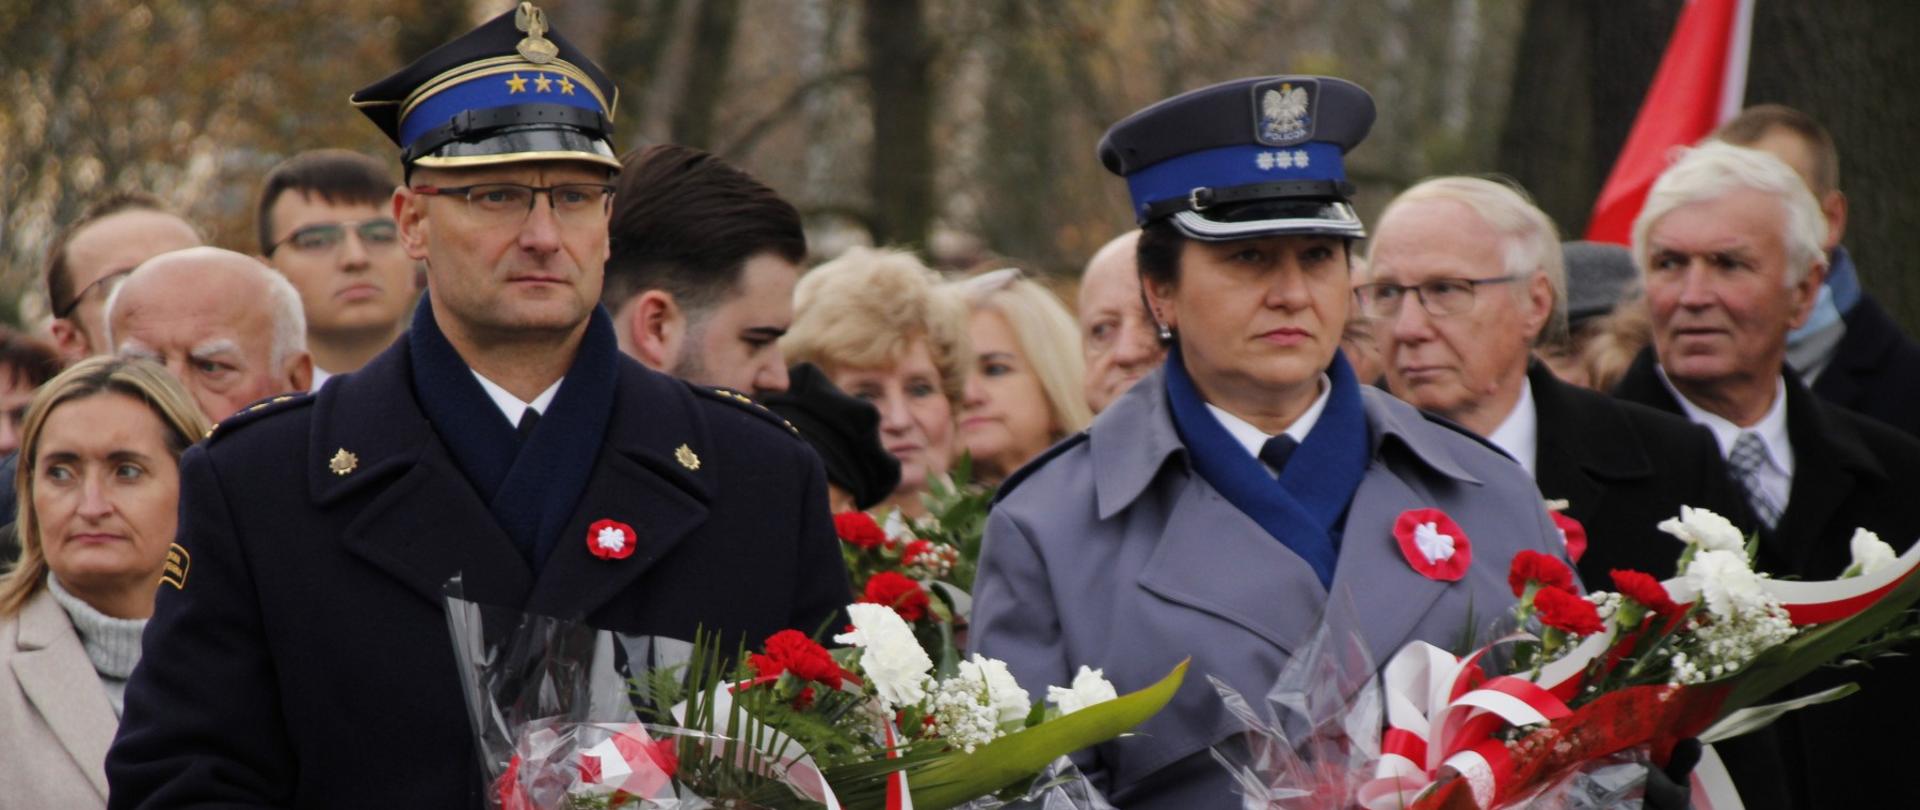 Komendant powiatowy PSP w Żyrardowie st. bryg. Mariusz Tymoszewicz stoi obok Komendanta Powiatowego Policji w Żyrardowie. W rękach trzymają wiązanki kwiatów w kolorze biało- czerwonym